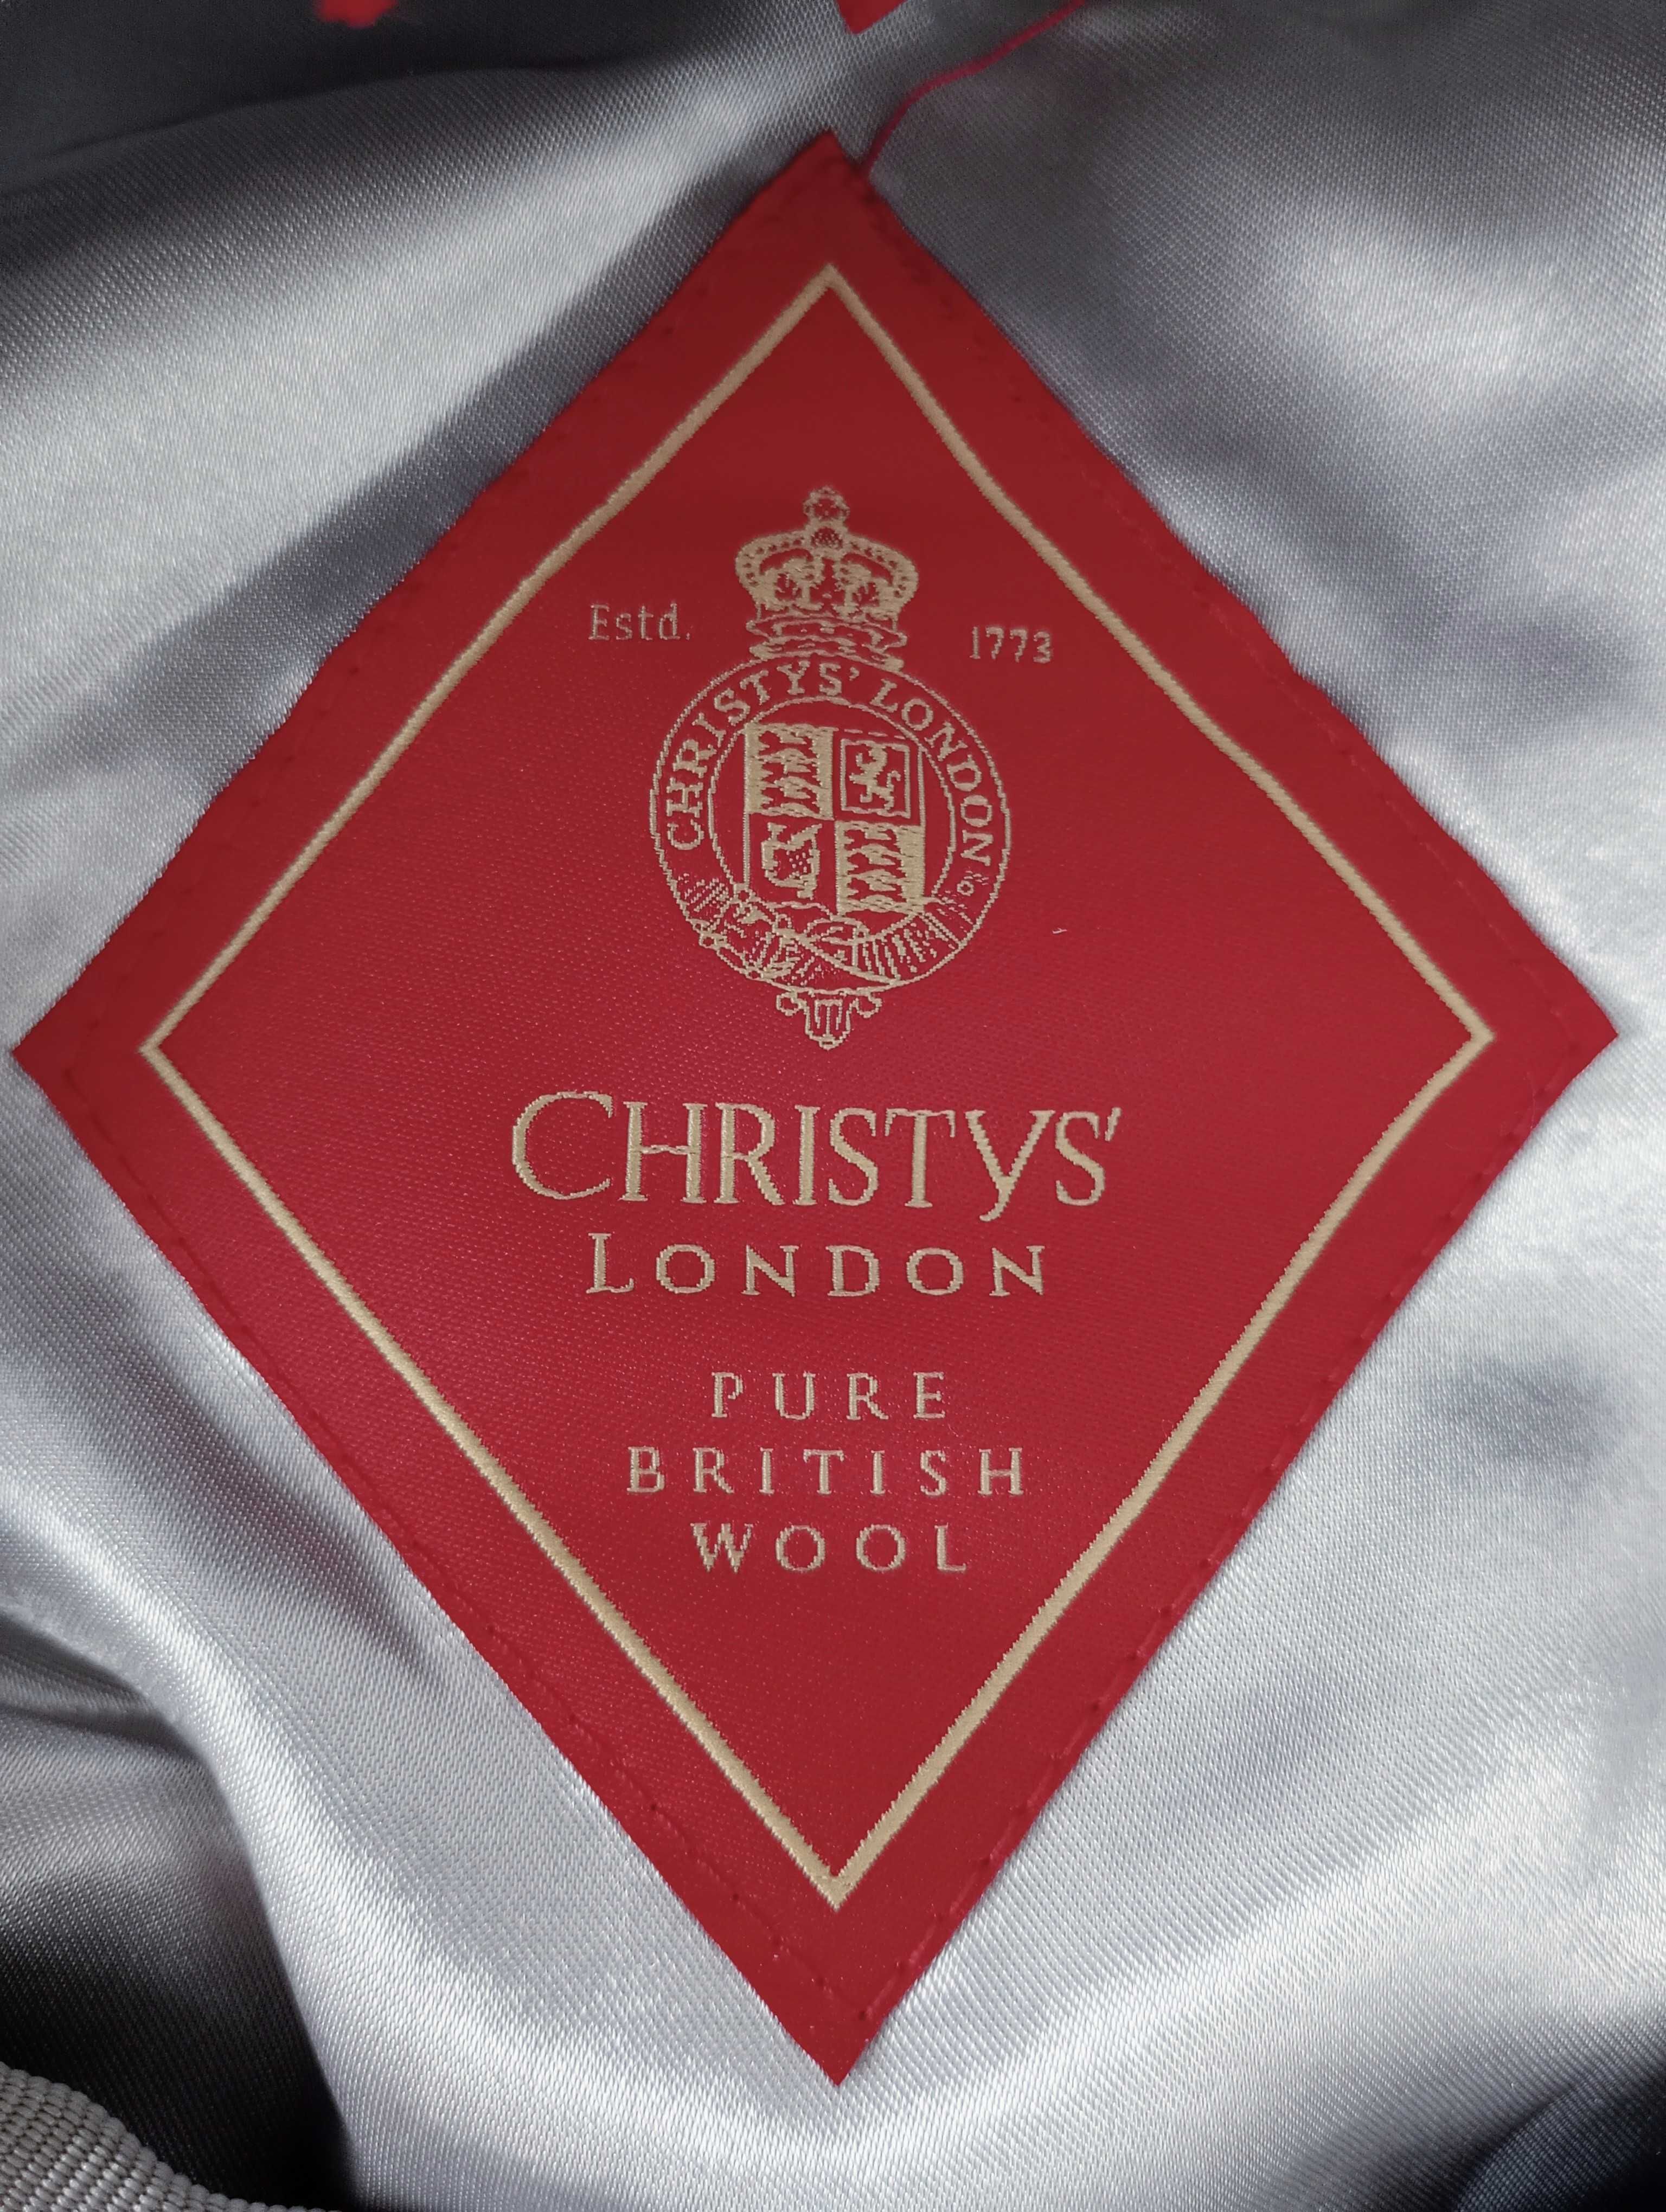 Angielska czapka z satynowej wełny, Christys' London